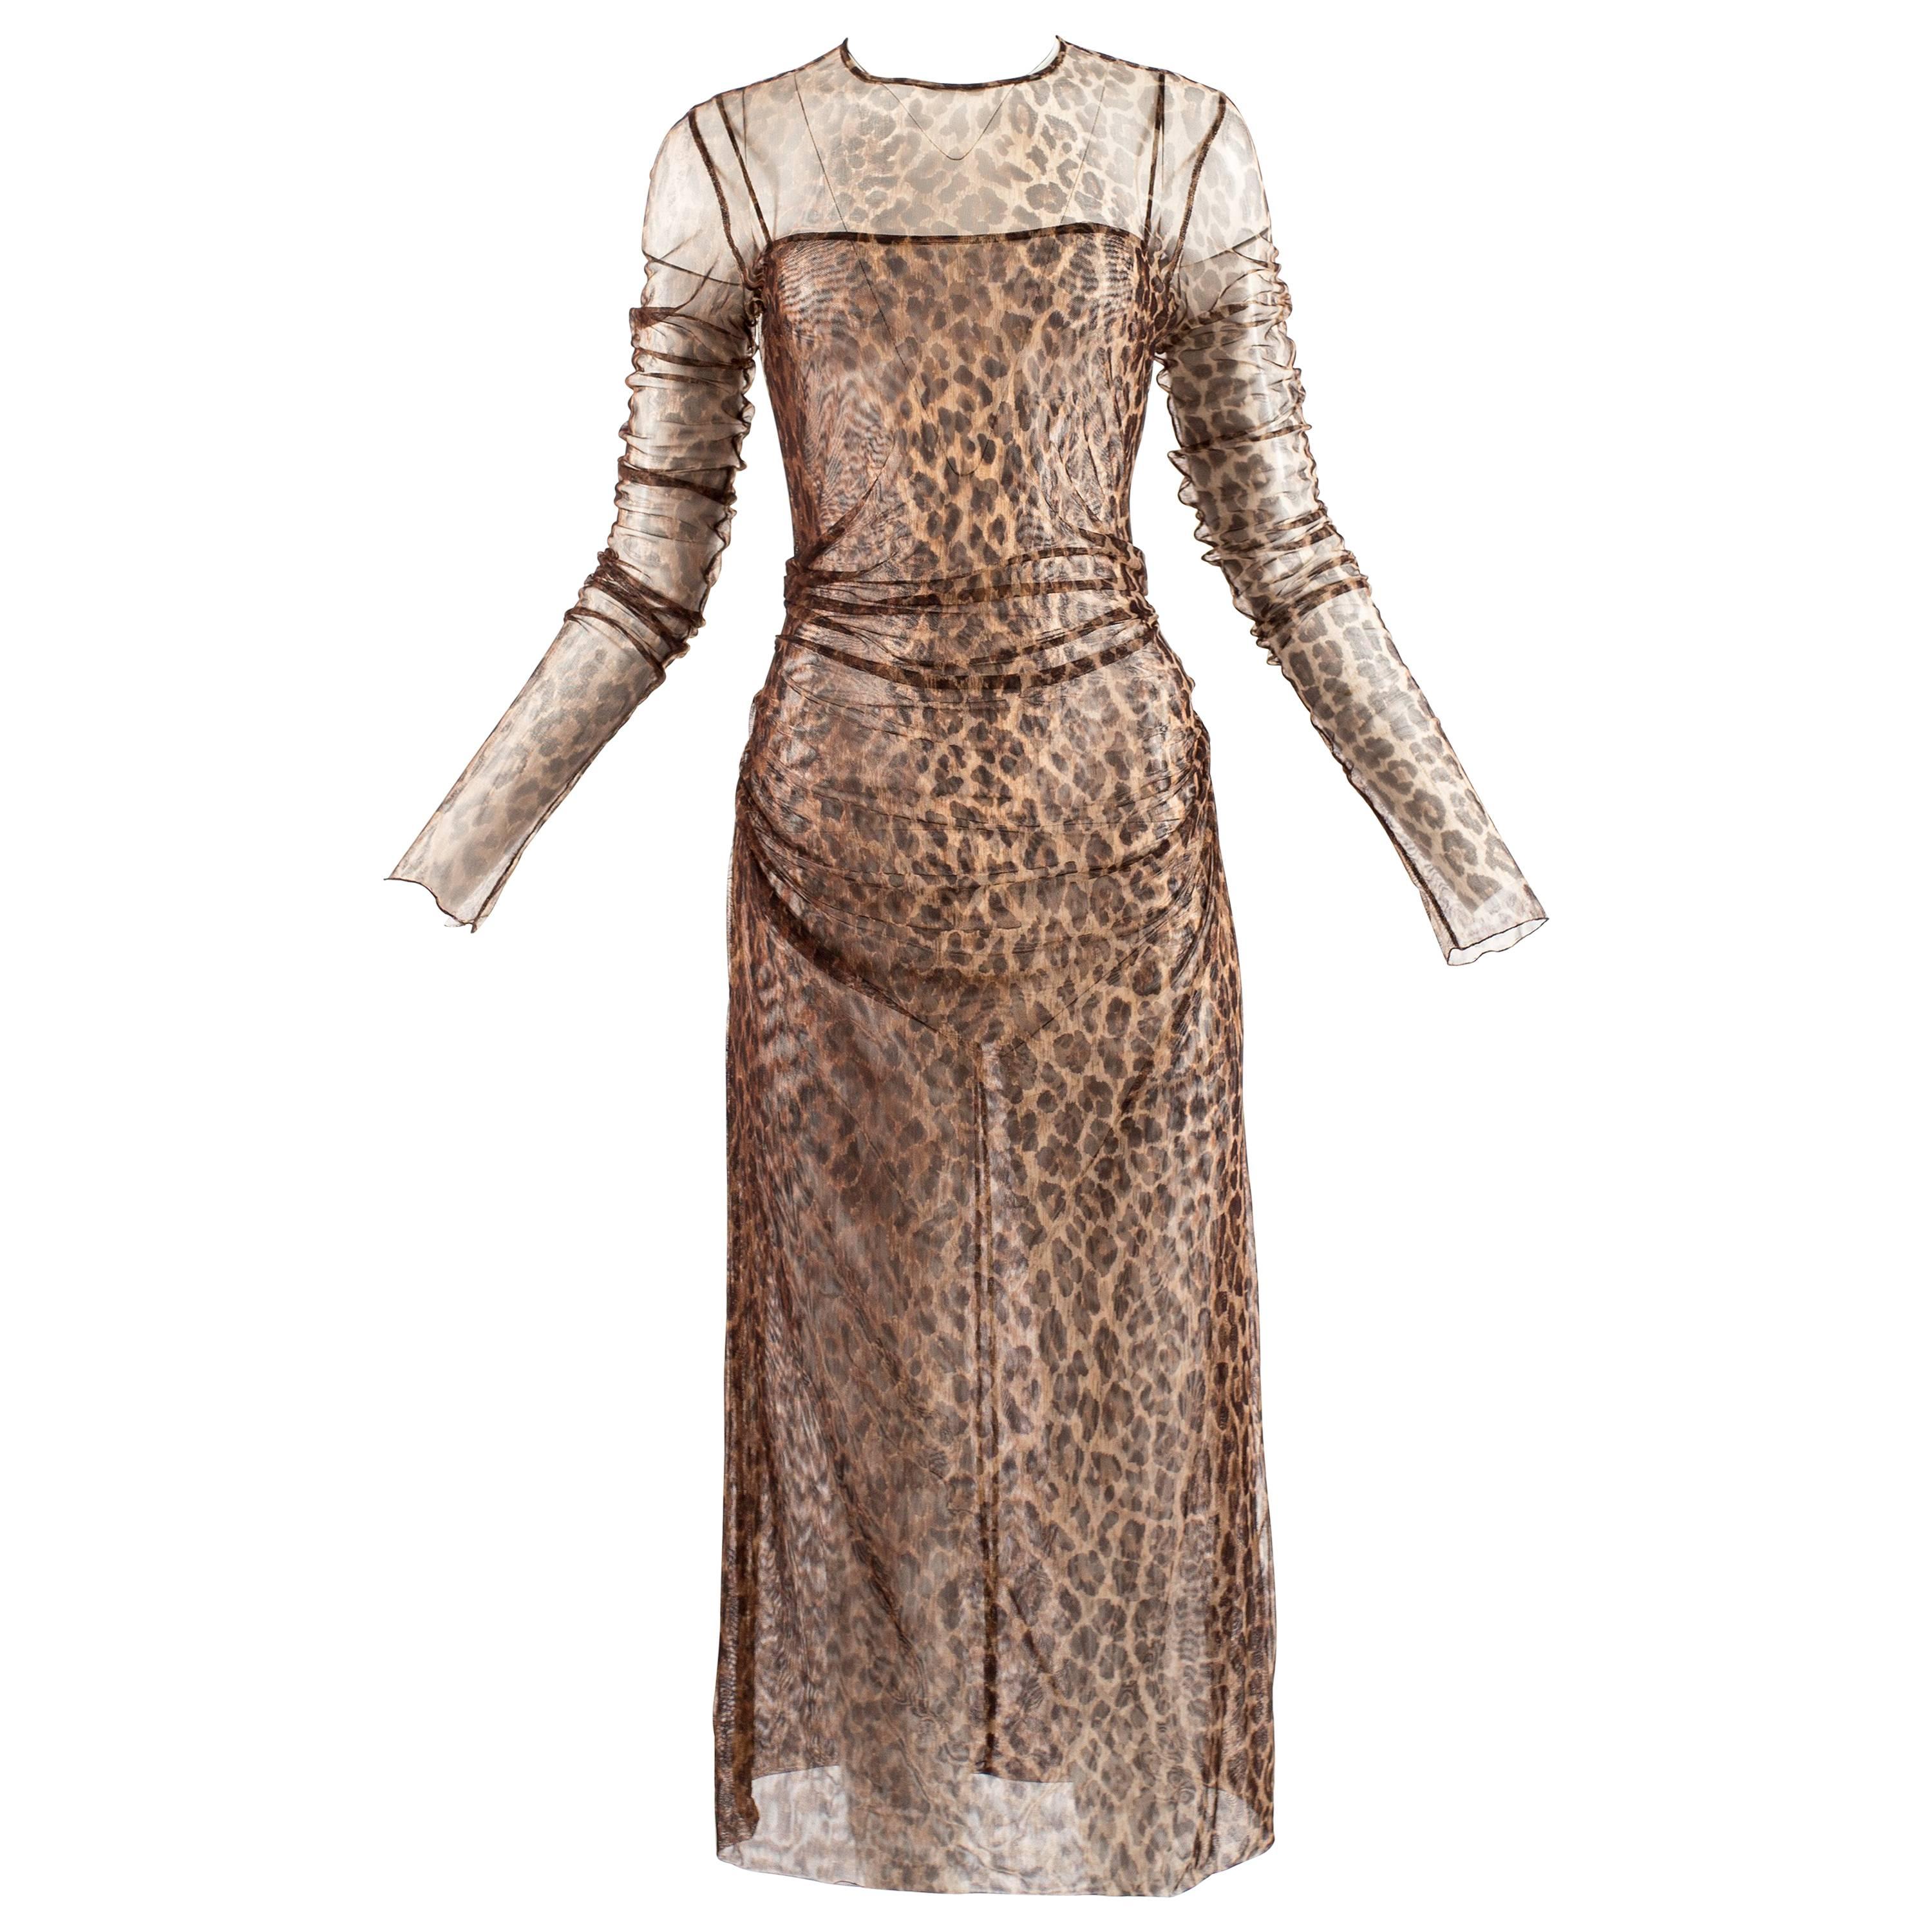 Dolce & Gabbana Spring-Summer 1997 leopard print mesh evening dress